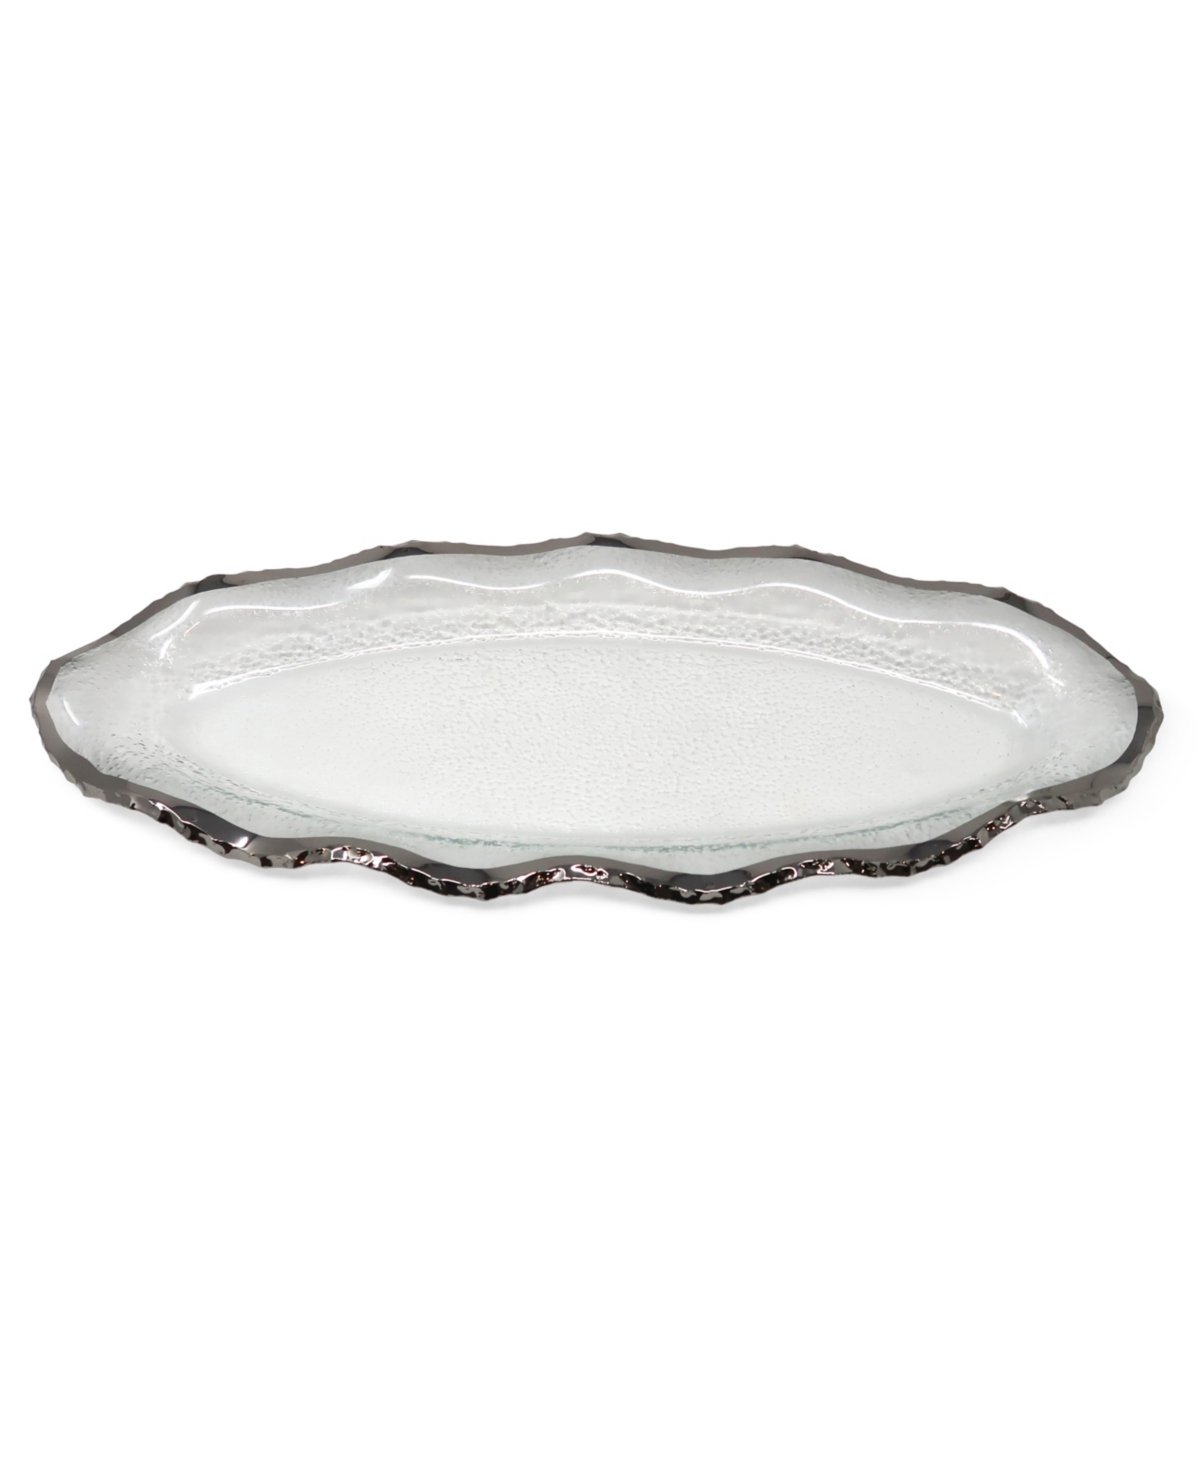 Glass Plate with Silver-Tone Scalloped Rim, 18" L - Silver